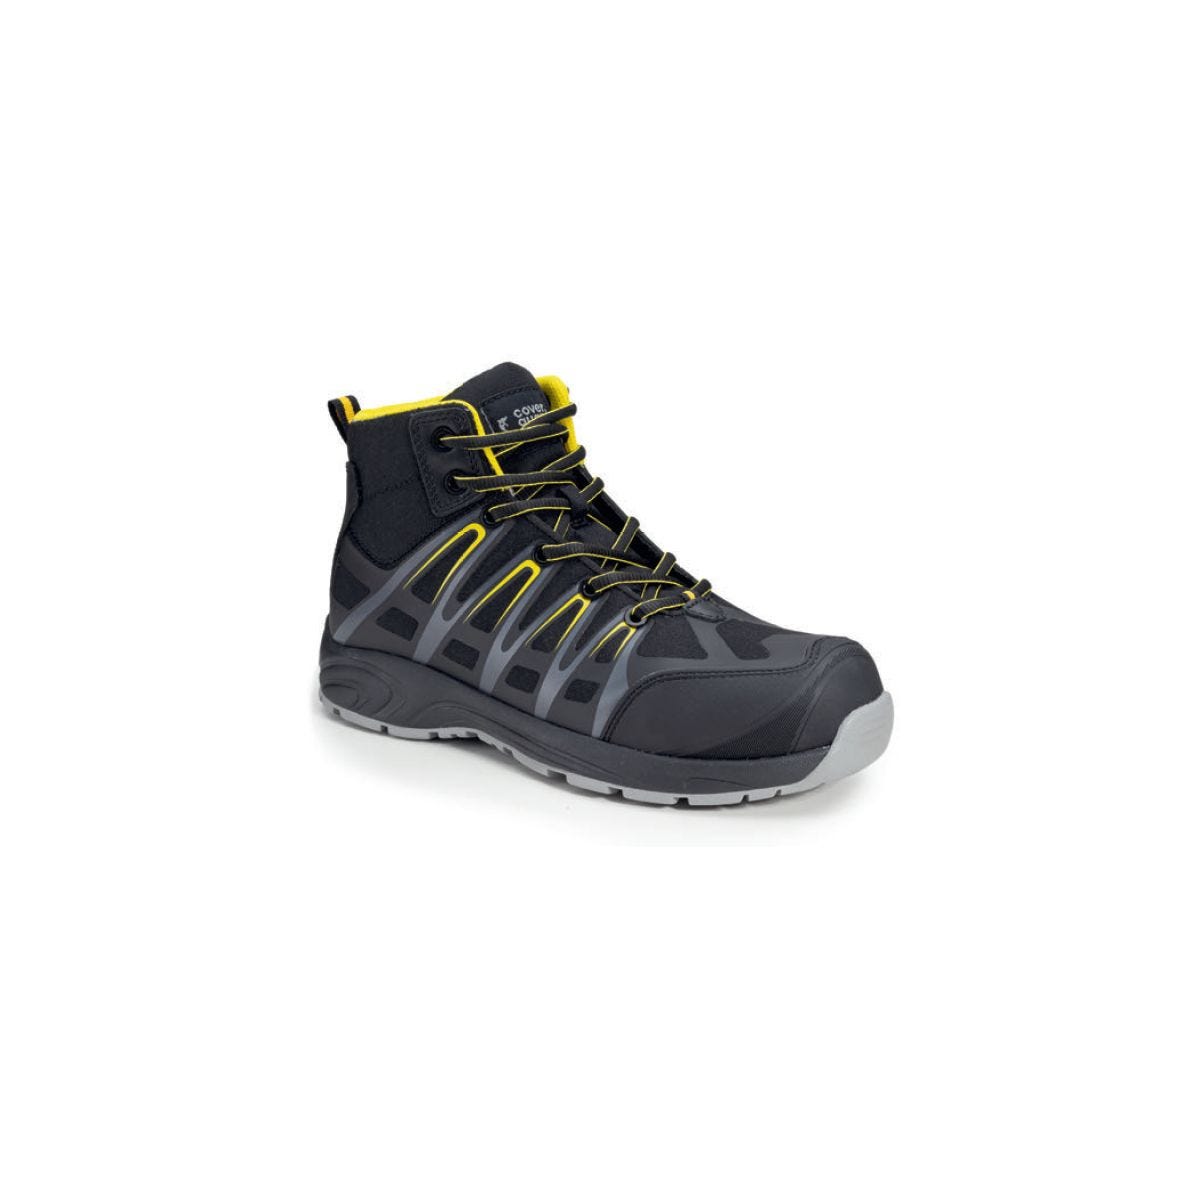 Chaussures de sécurité hautes ALUNI S3 noir et jaune - Coverguard - Taille 44 0